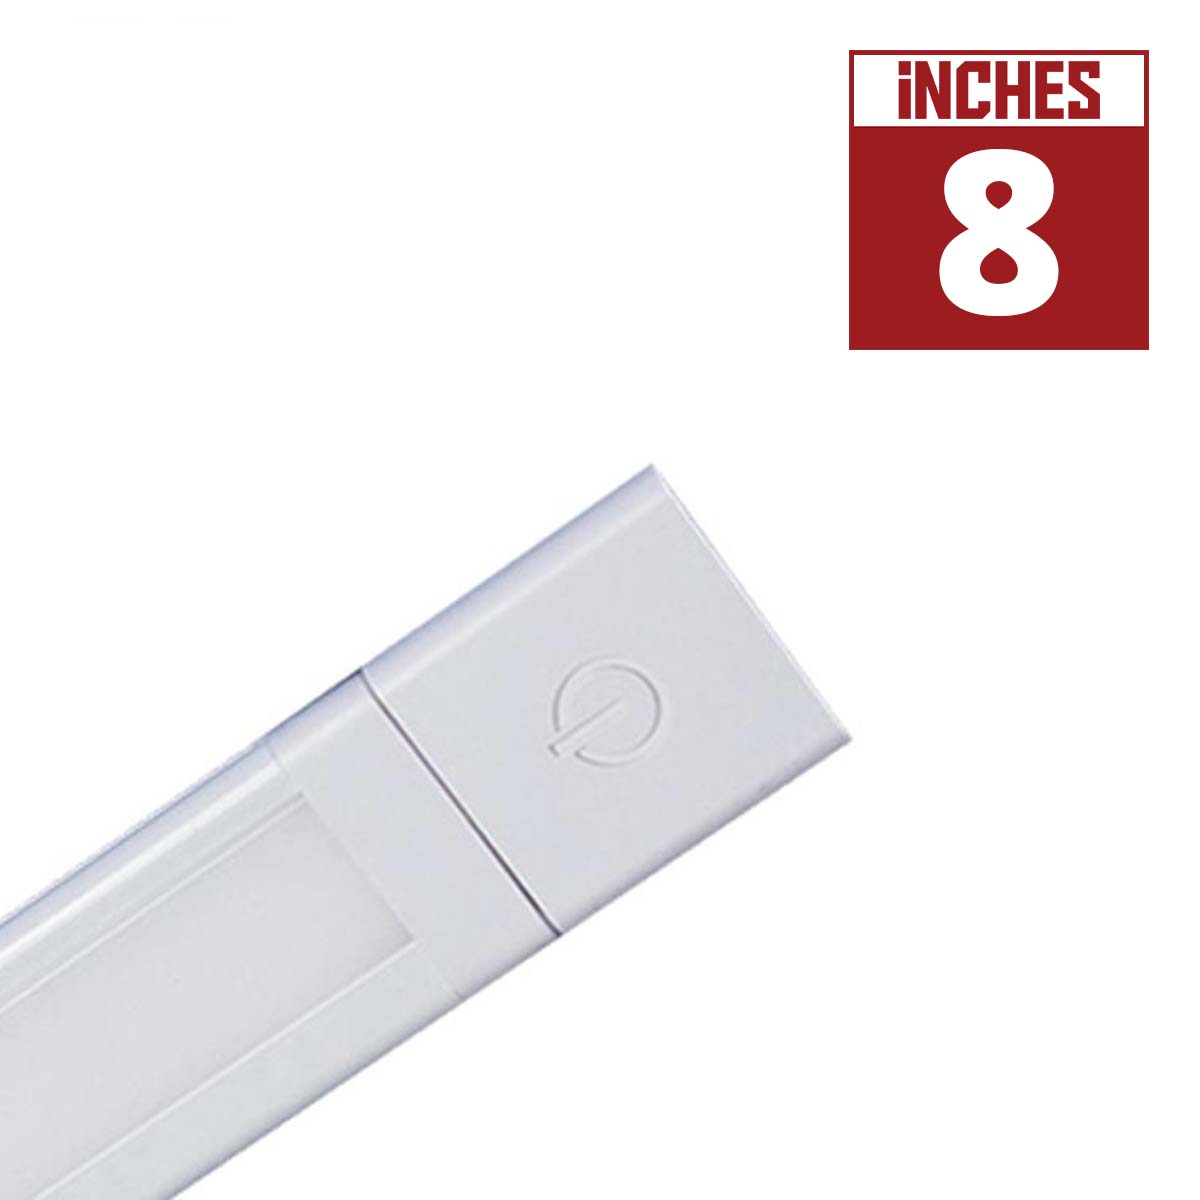 SlimEdge 8 Inch Plug In Under Cabinet LED Light, 150 Lumens, Linkable, 24V